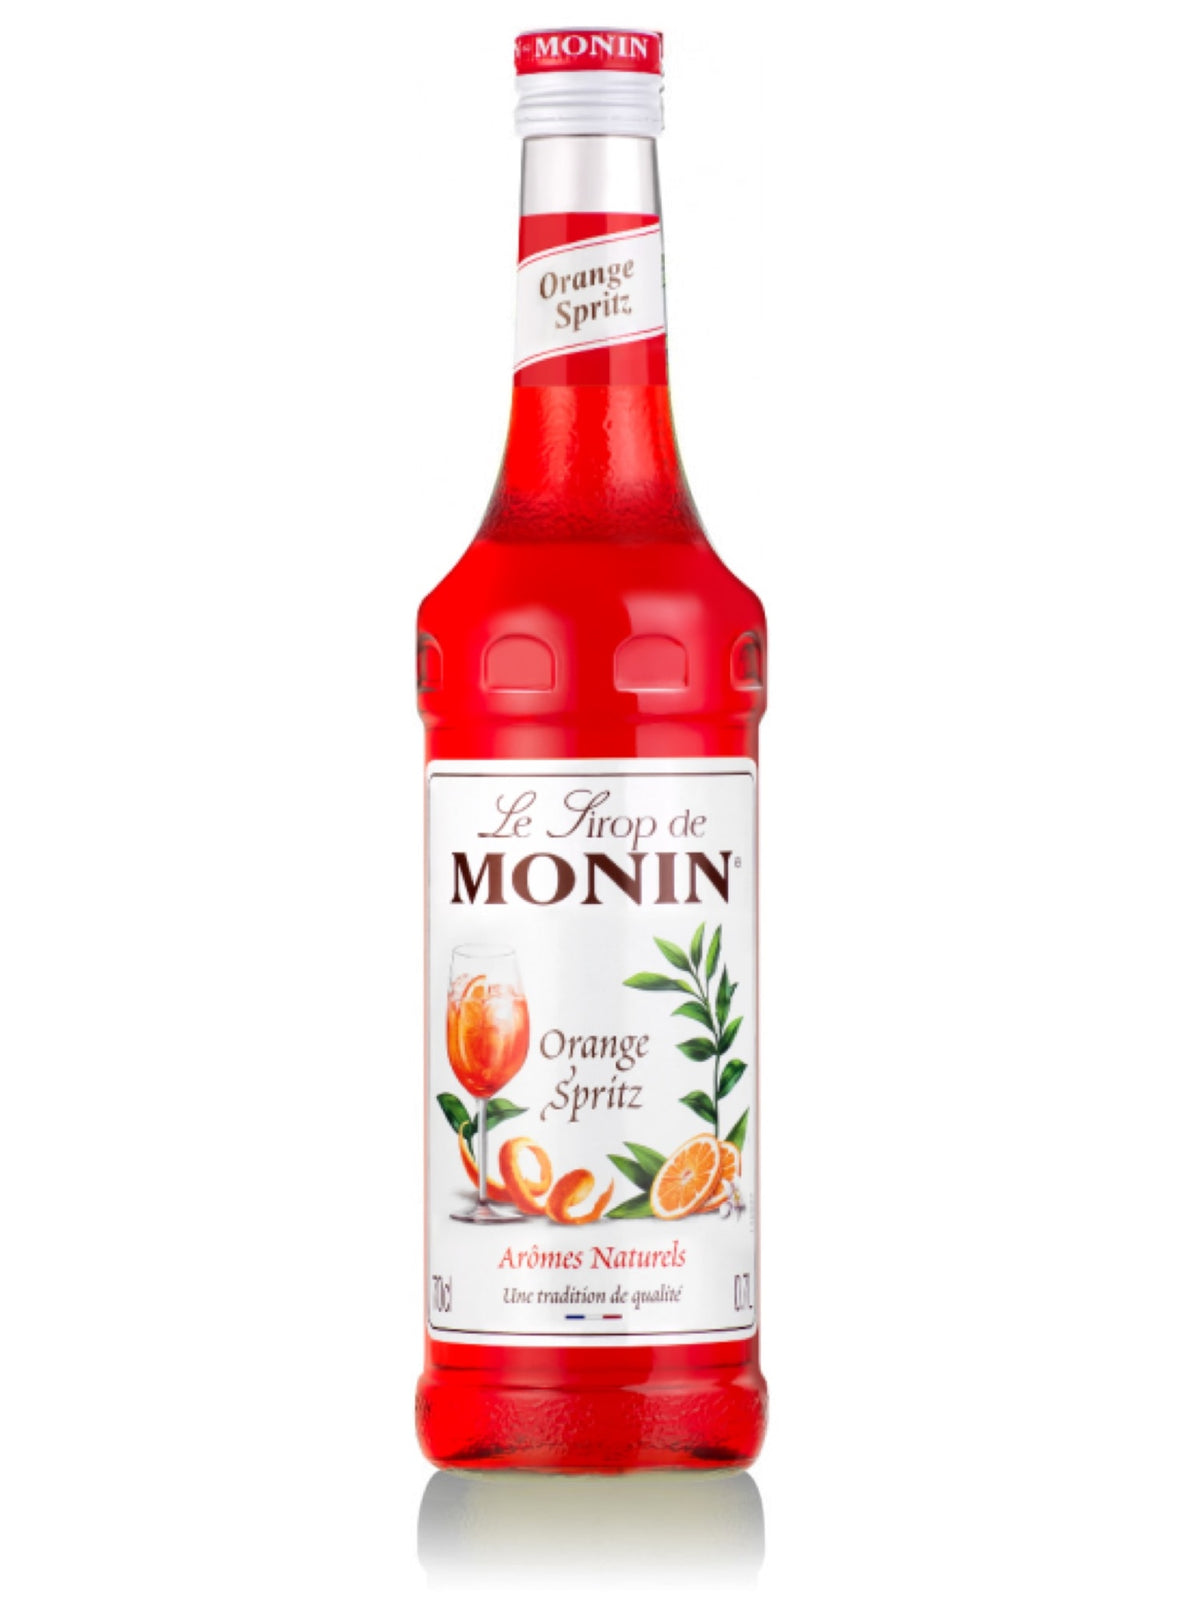 Monin Orange Spritz Sirup - tilføj en frisk og sprudlende smag til dine drikkevarer med denne lækre orange sirup, perfekt til cocktails, sodavand og mocktails